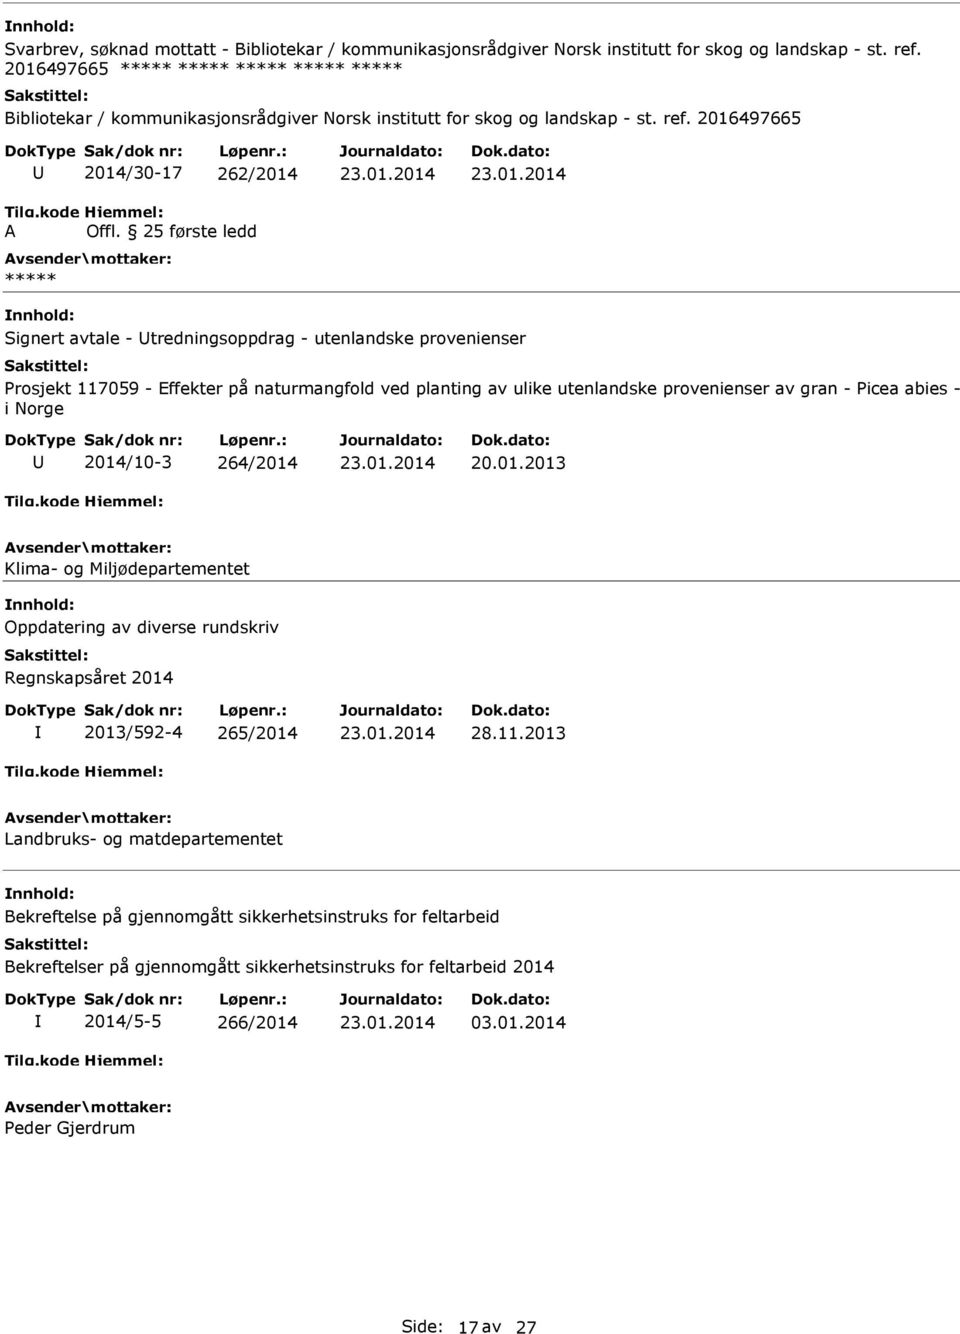 provenienser av gran - Picea abies - i Norge 2014/10-3 264/2014 20.01.2013 Klima- og Miljødepartementet Oppdatering av diverse rundskriv Regnskapsåret 2014 2013/592-4 265/2014 28.